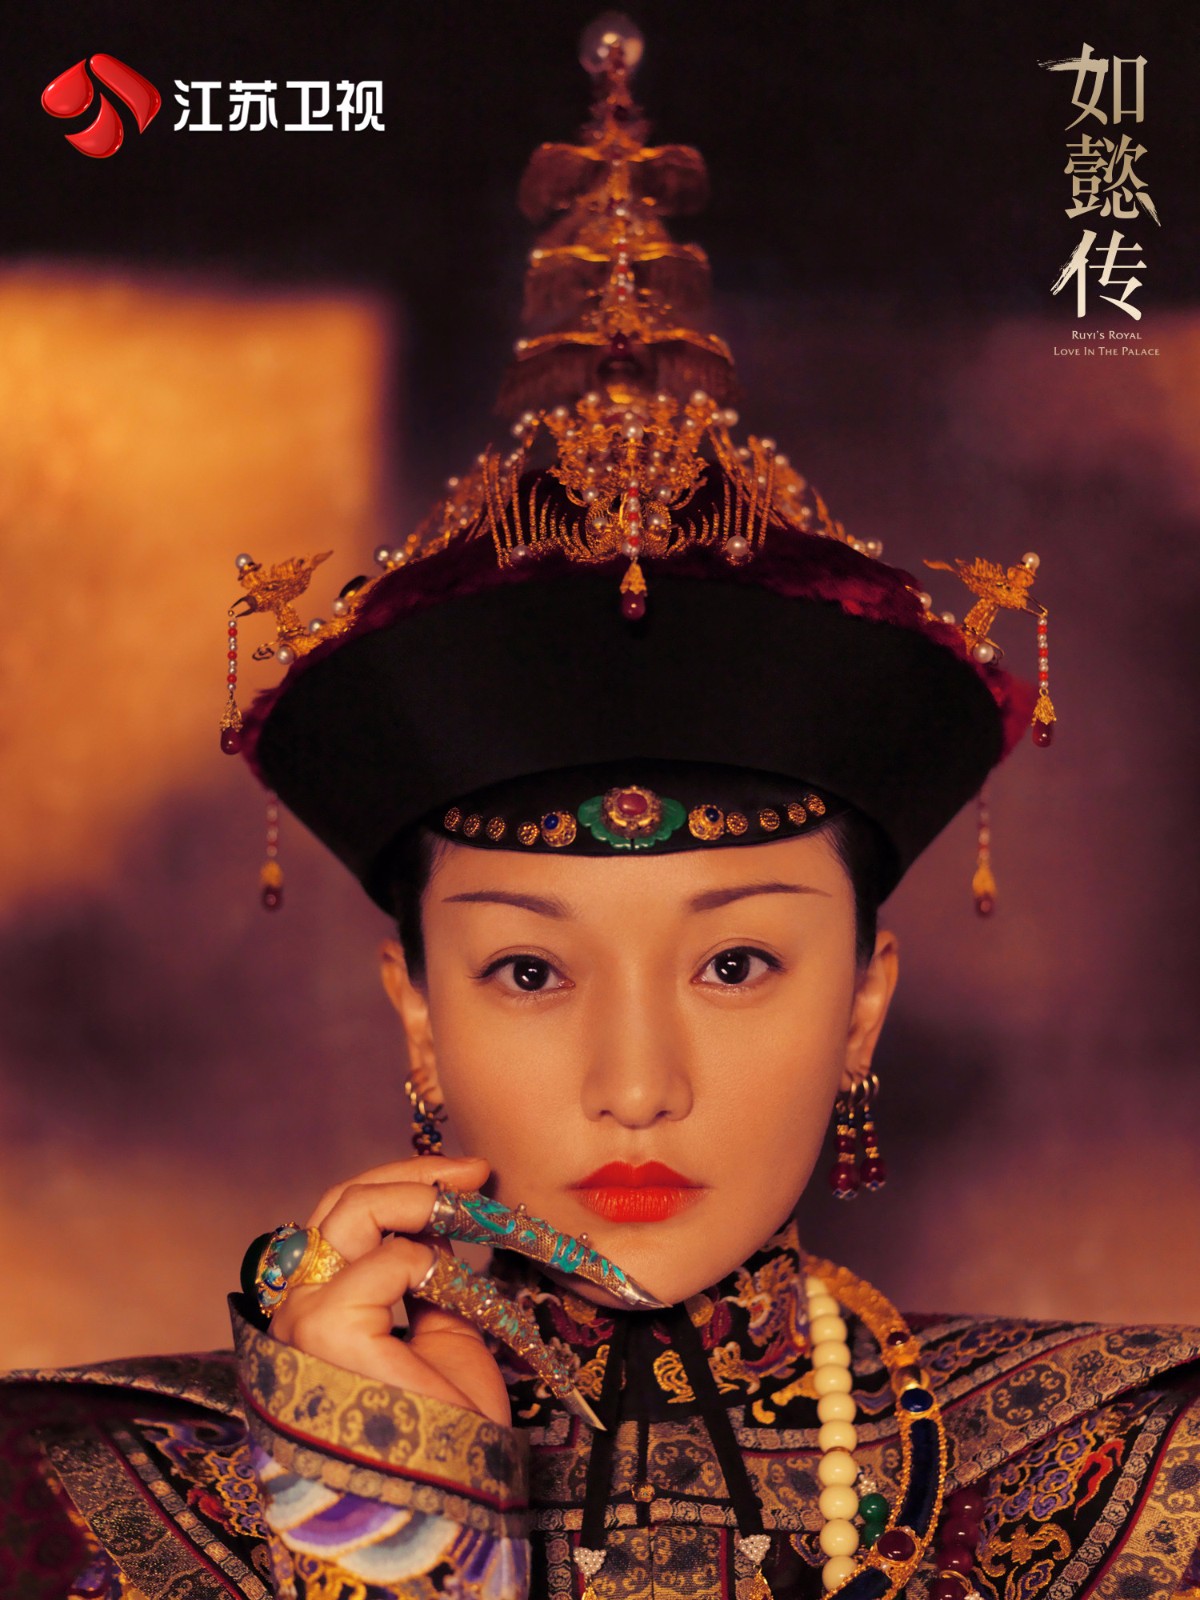 没想到唐朝史上最敬业的皇后居然是她